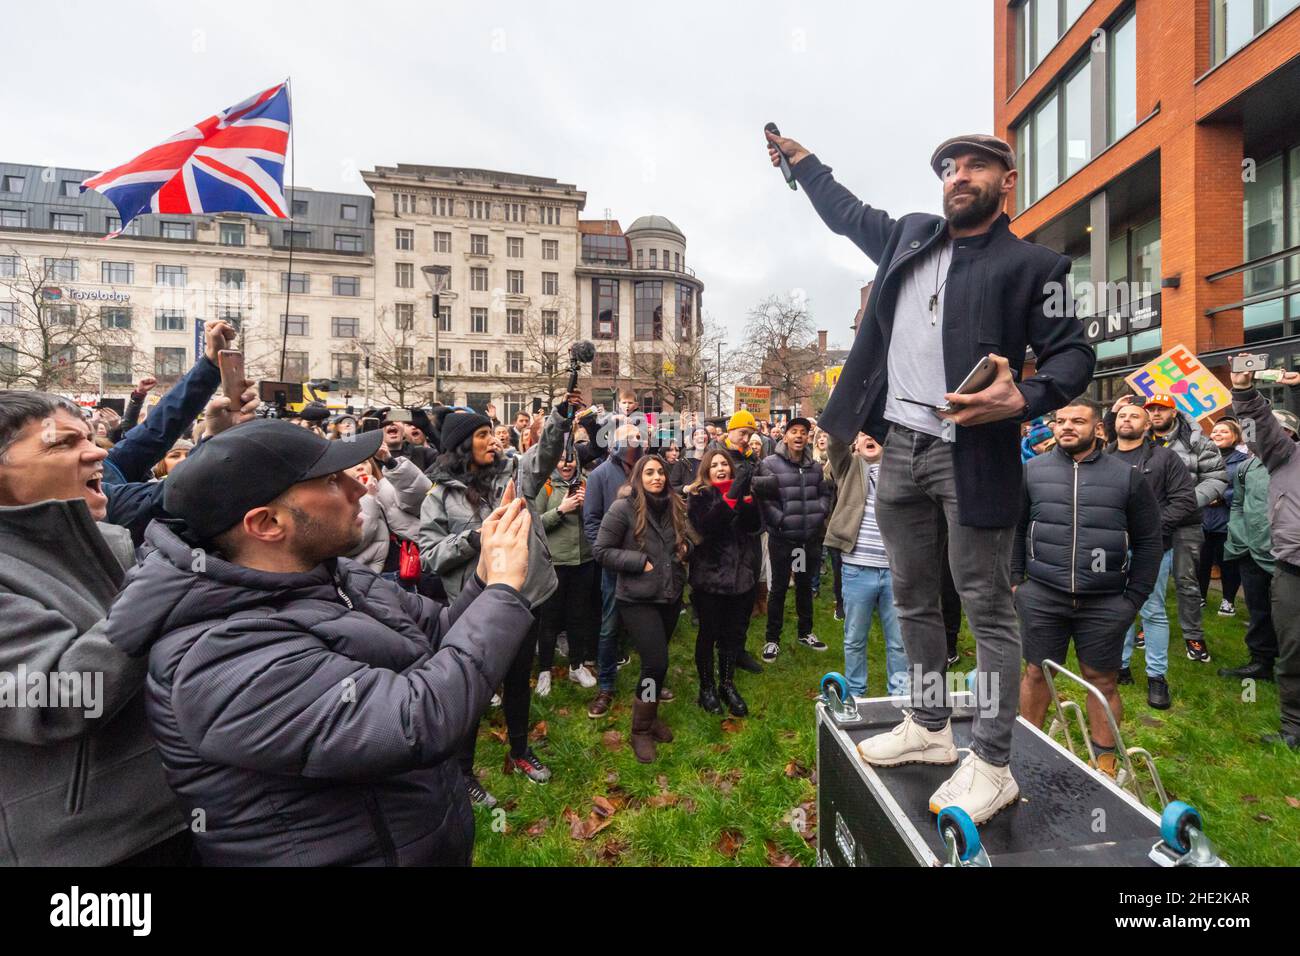 Paul Boys donne un discours à une foule dans les jardins Piccadilly de Manchester, le 6th décembre 2020, lors d'une manifestation de liberté/d'anti-verrouillage.Angleterre, Royaume-Uni Banque D'Images